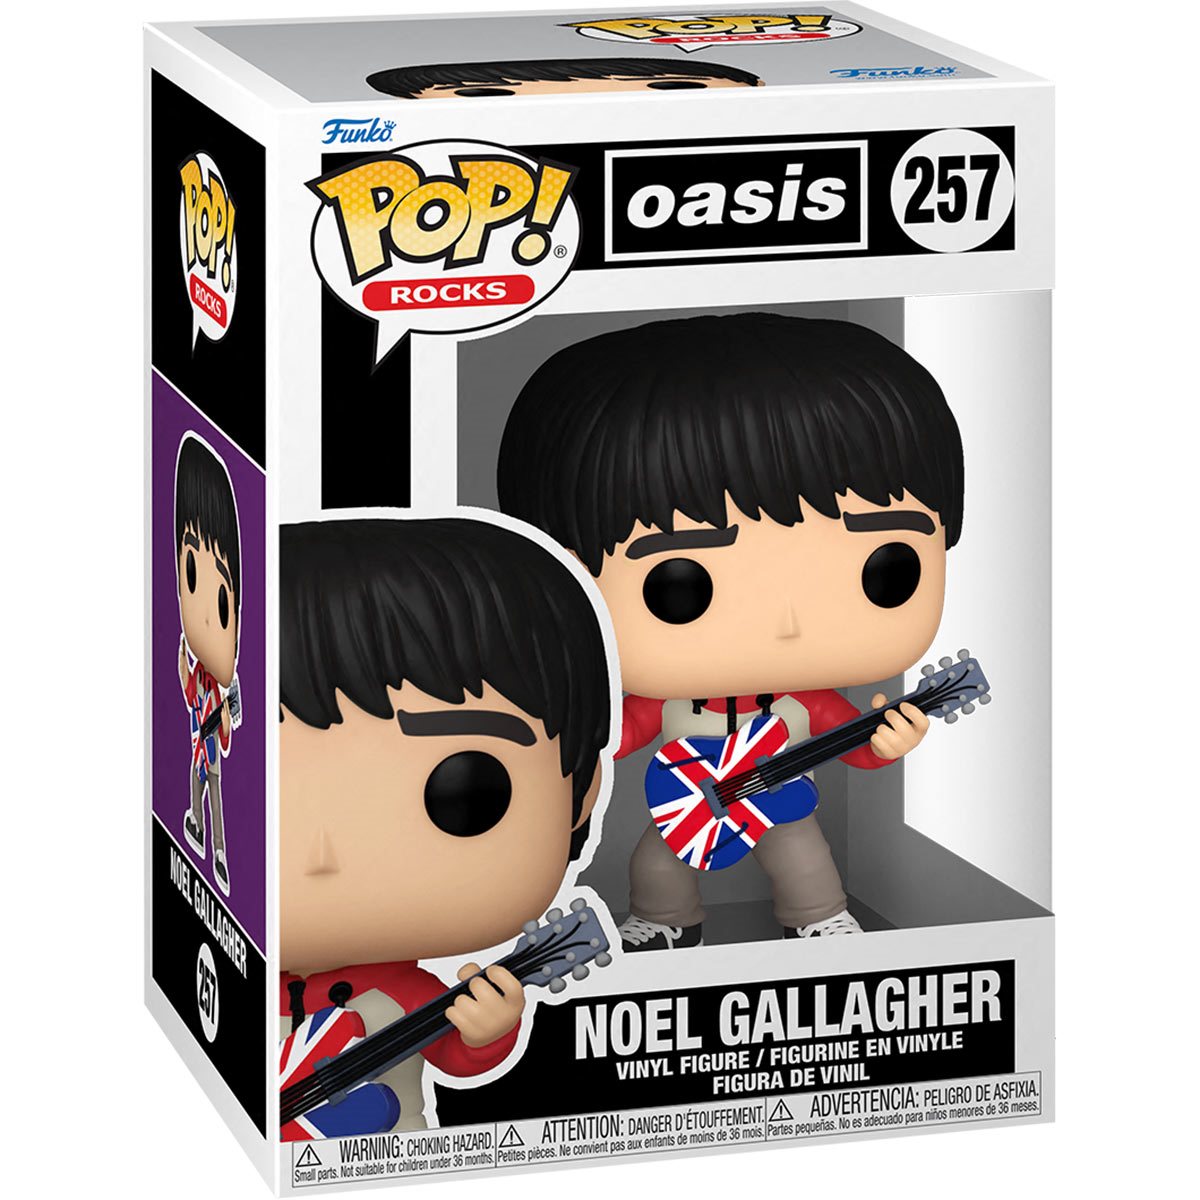 Funko Pop Rocks: Oasis - Noel Gallagher